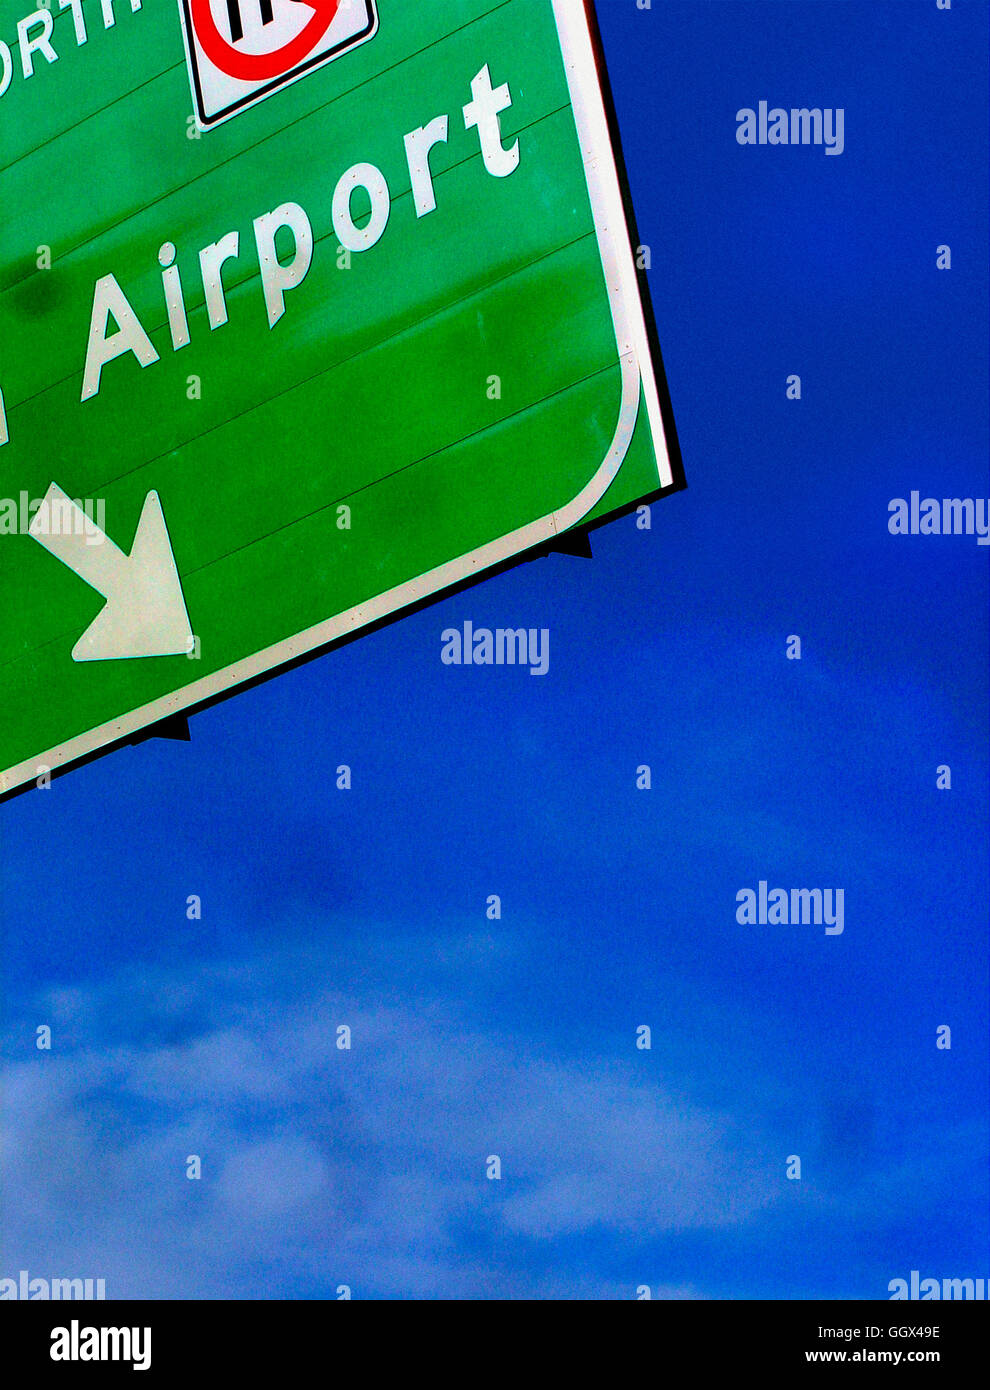 Escena urbana del Letrero con flecha direccional contra un cielo azul claro espacio de copia Foto de stock